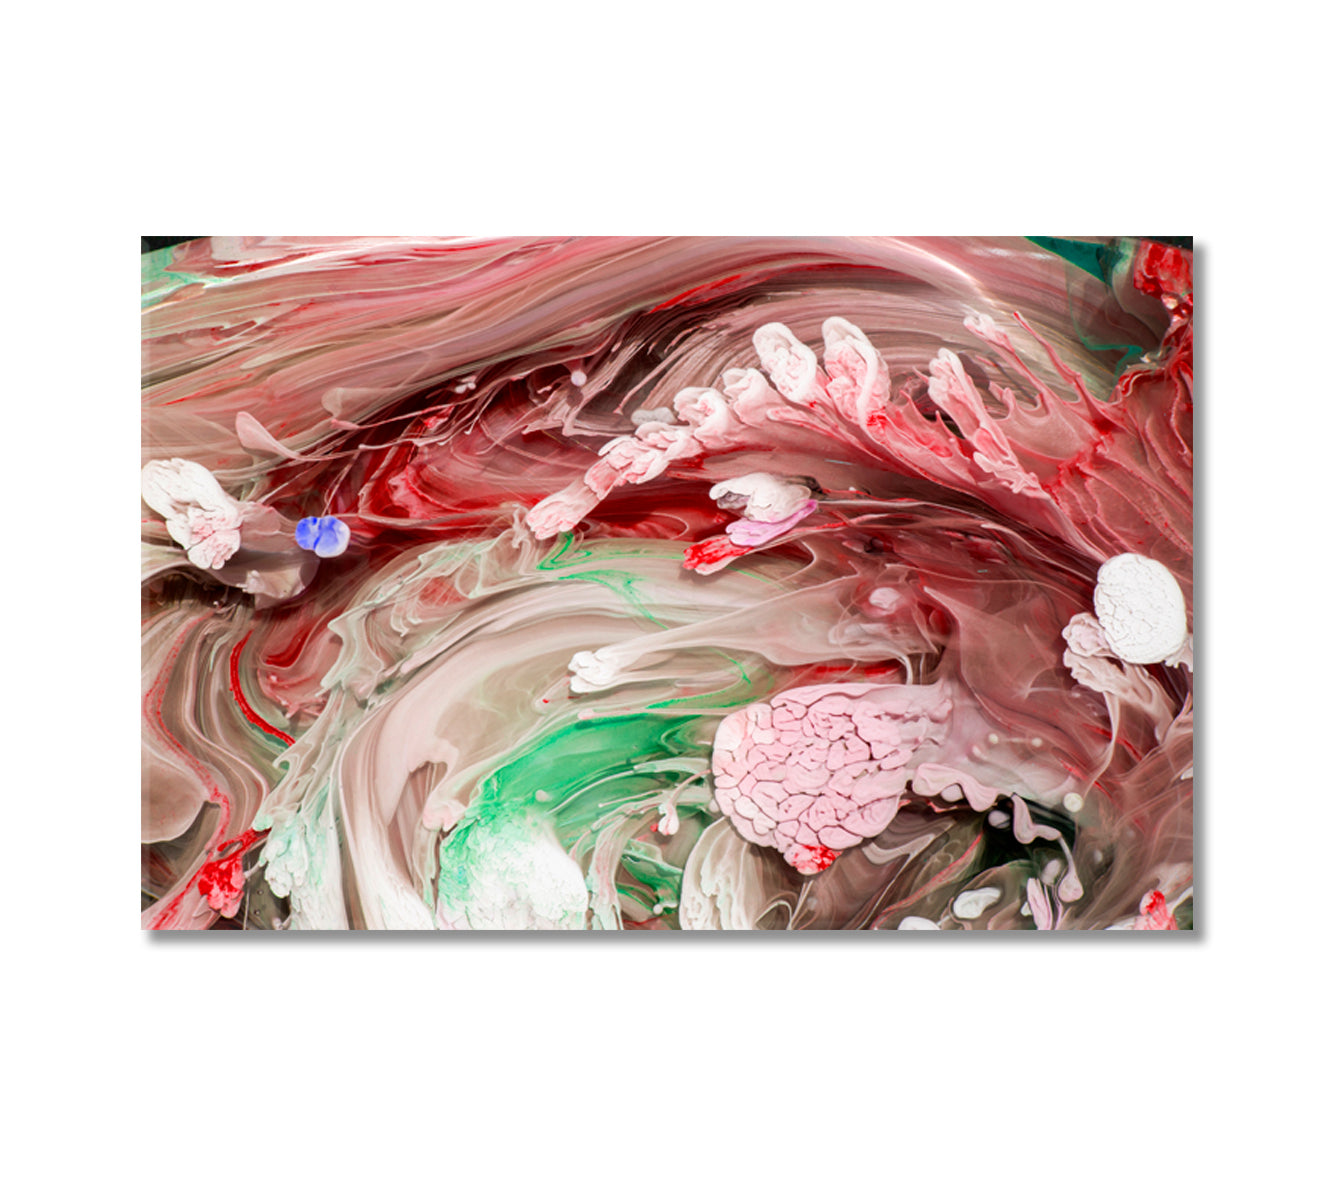 Mixed Liquid Paints Petri Art Canvas Print-Canvas Print-CetArt-1 Panel-24x16 inches-CetArt